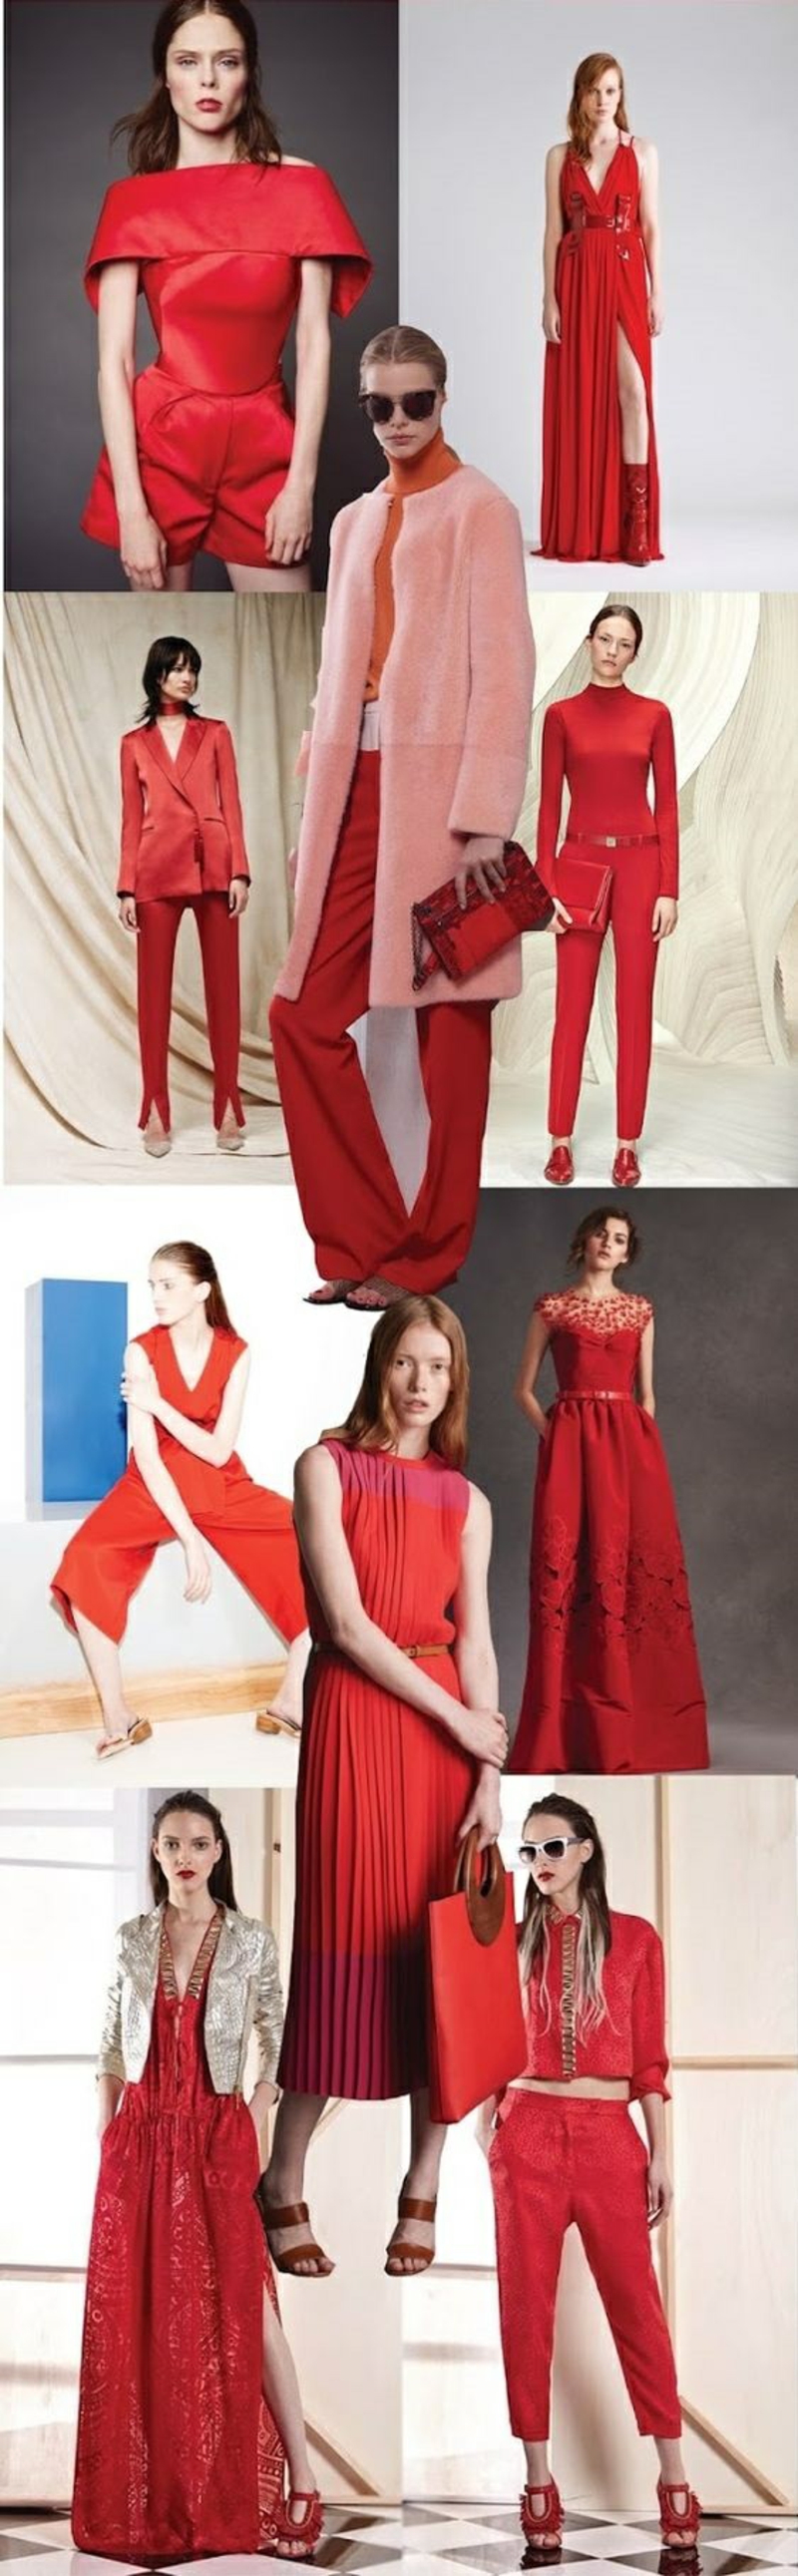 Consejos de estilo Fashion Trends 2016 color de tendencia vestidos rojos